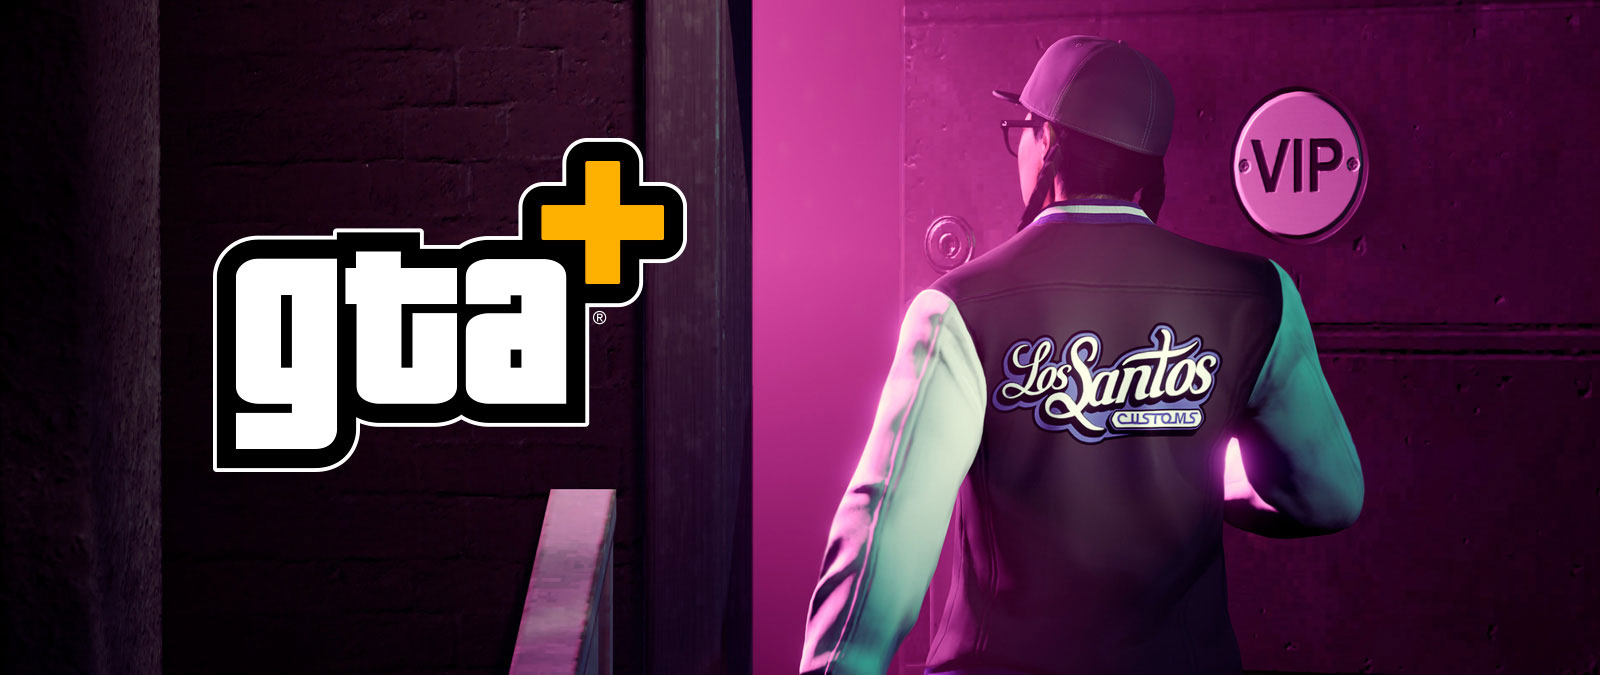 GTA+-logo, hahmo kävelee VIP-huoneeseen Los Santos Customs -takki yllään